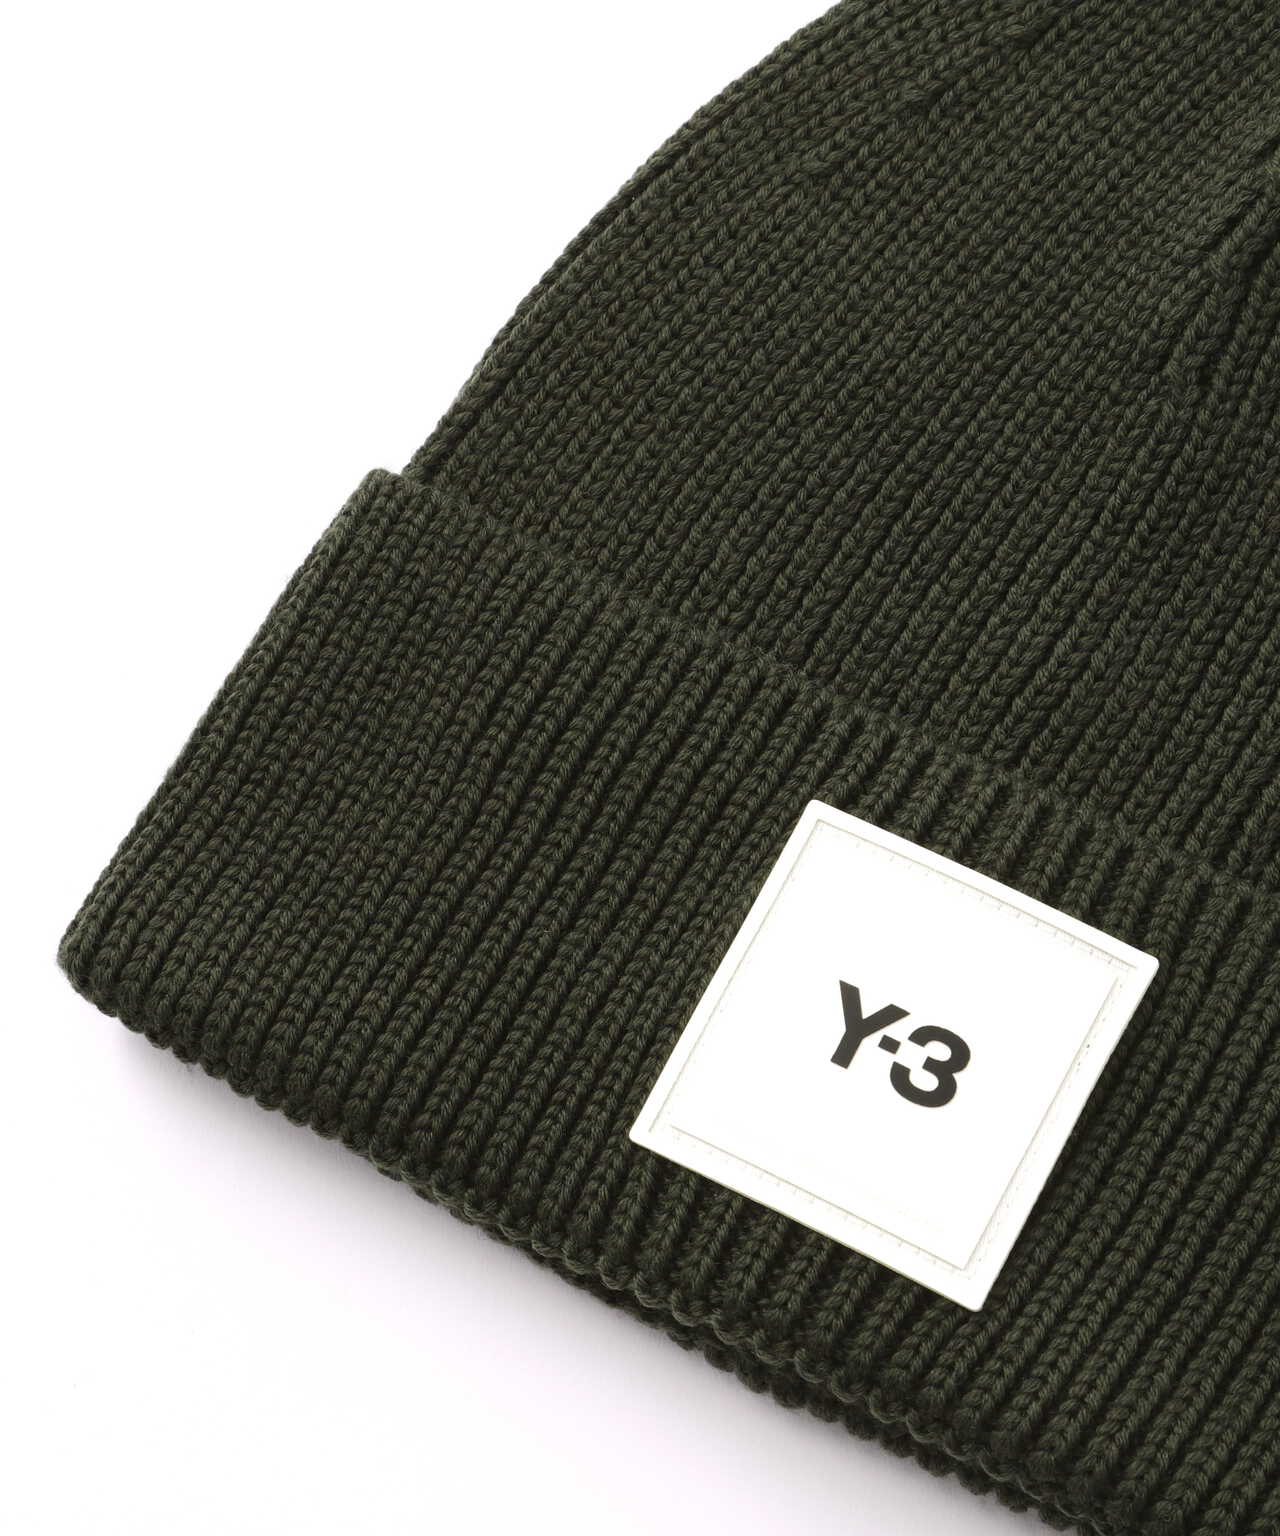 新品 Y-3 KINT CAP